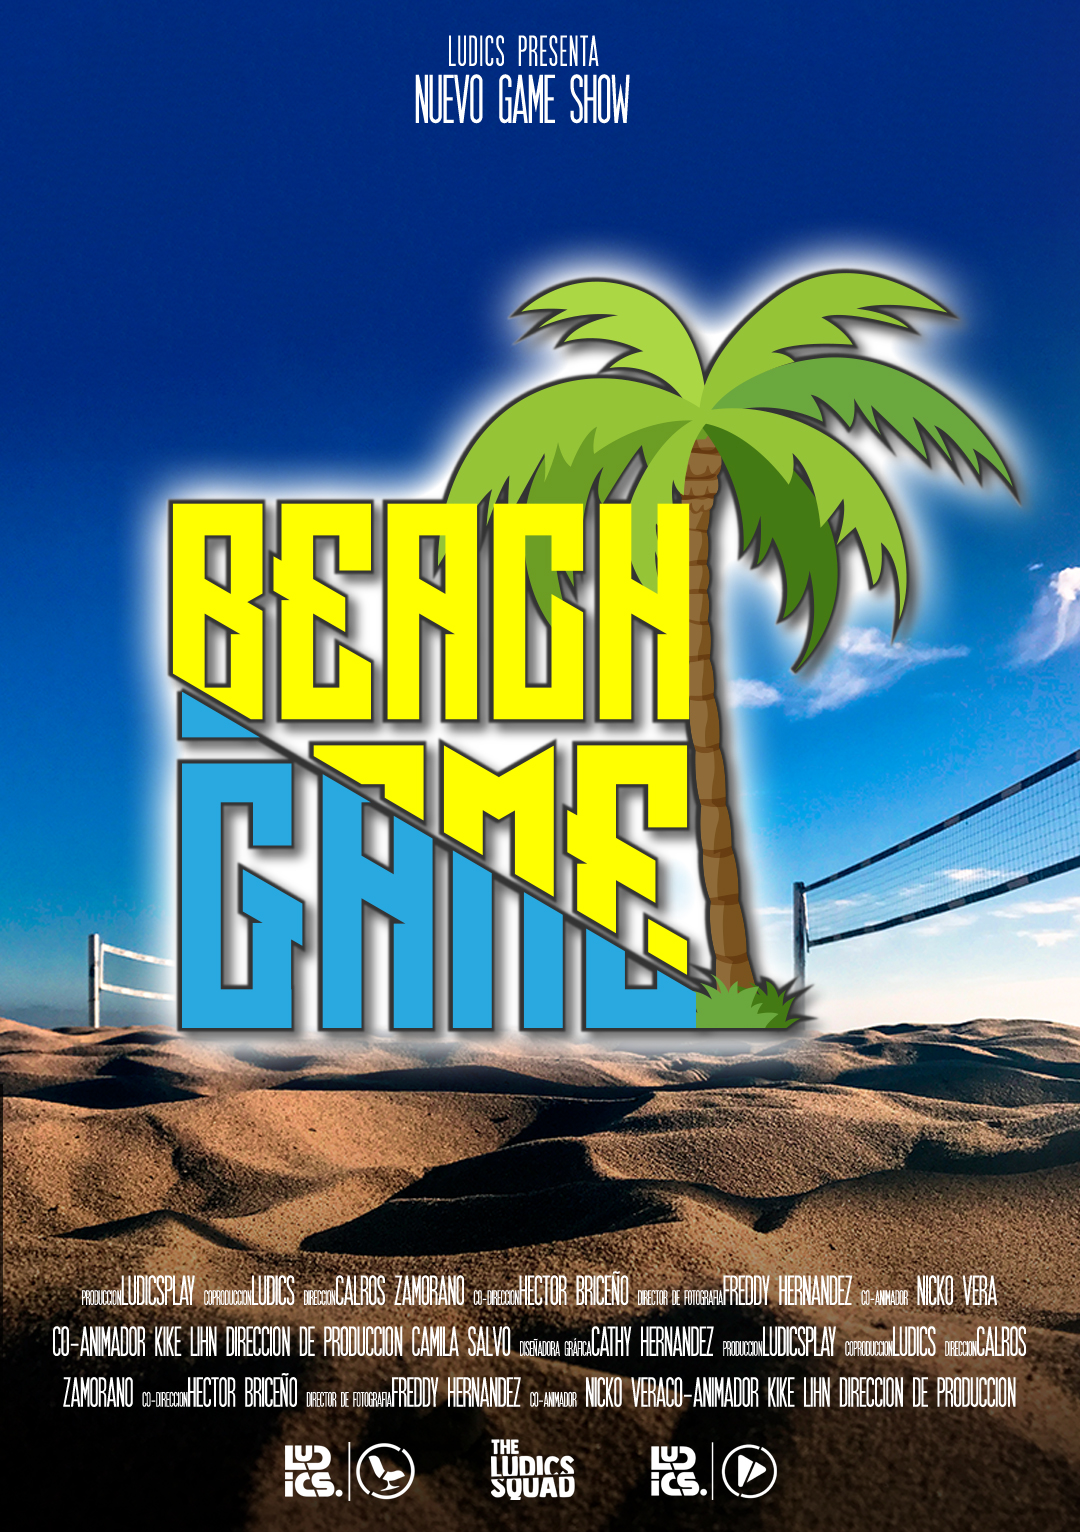 BEACH GAME